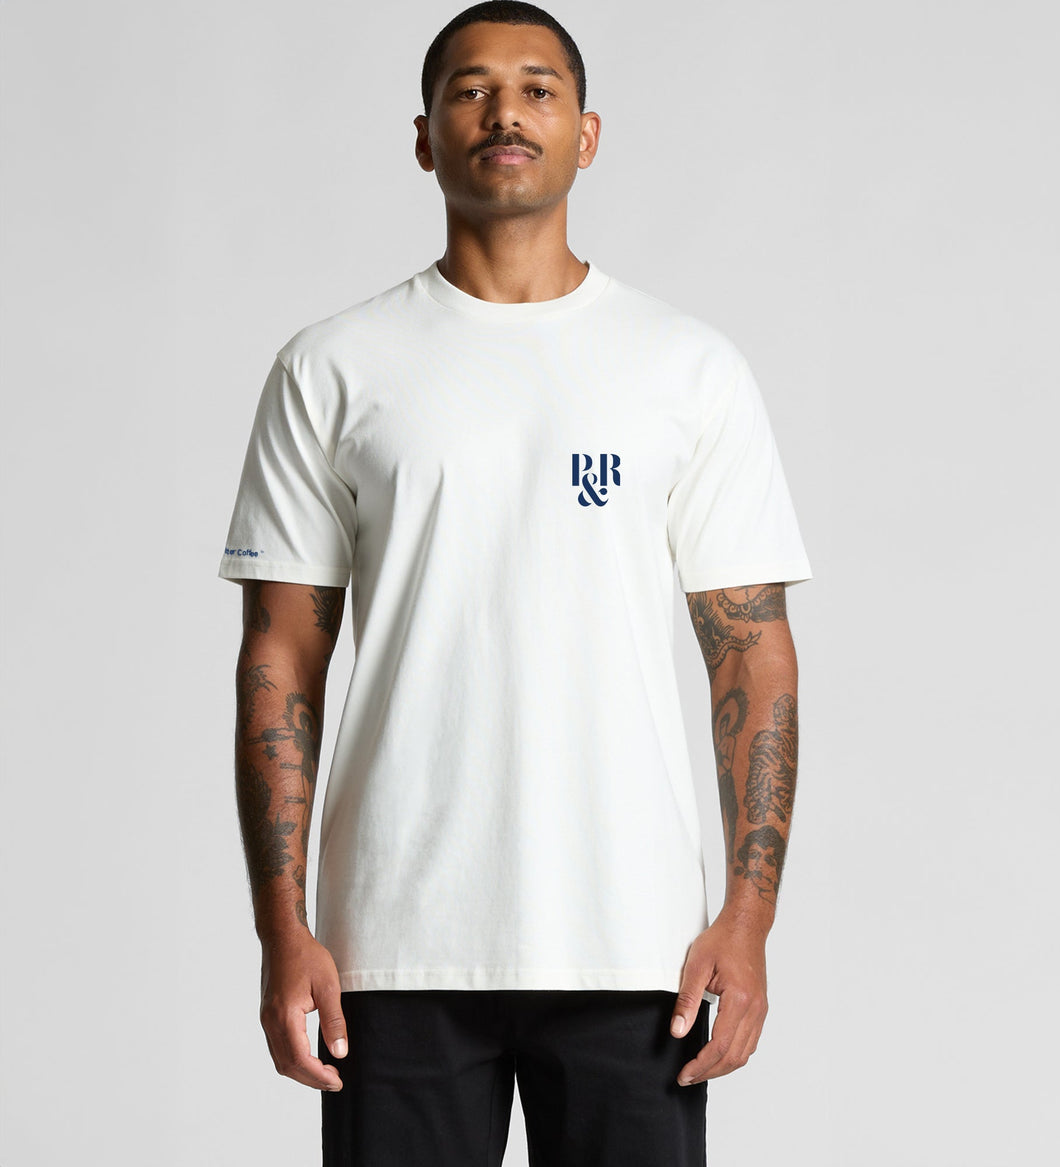 P&R White T-Shirt